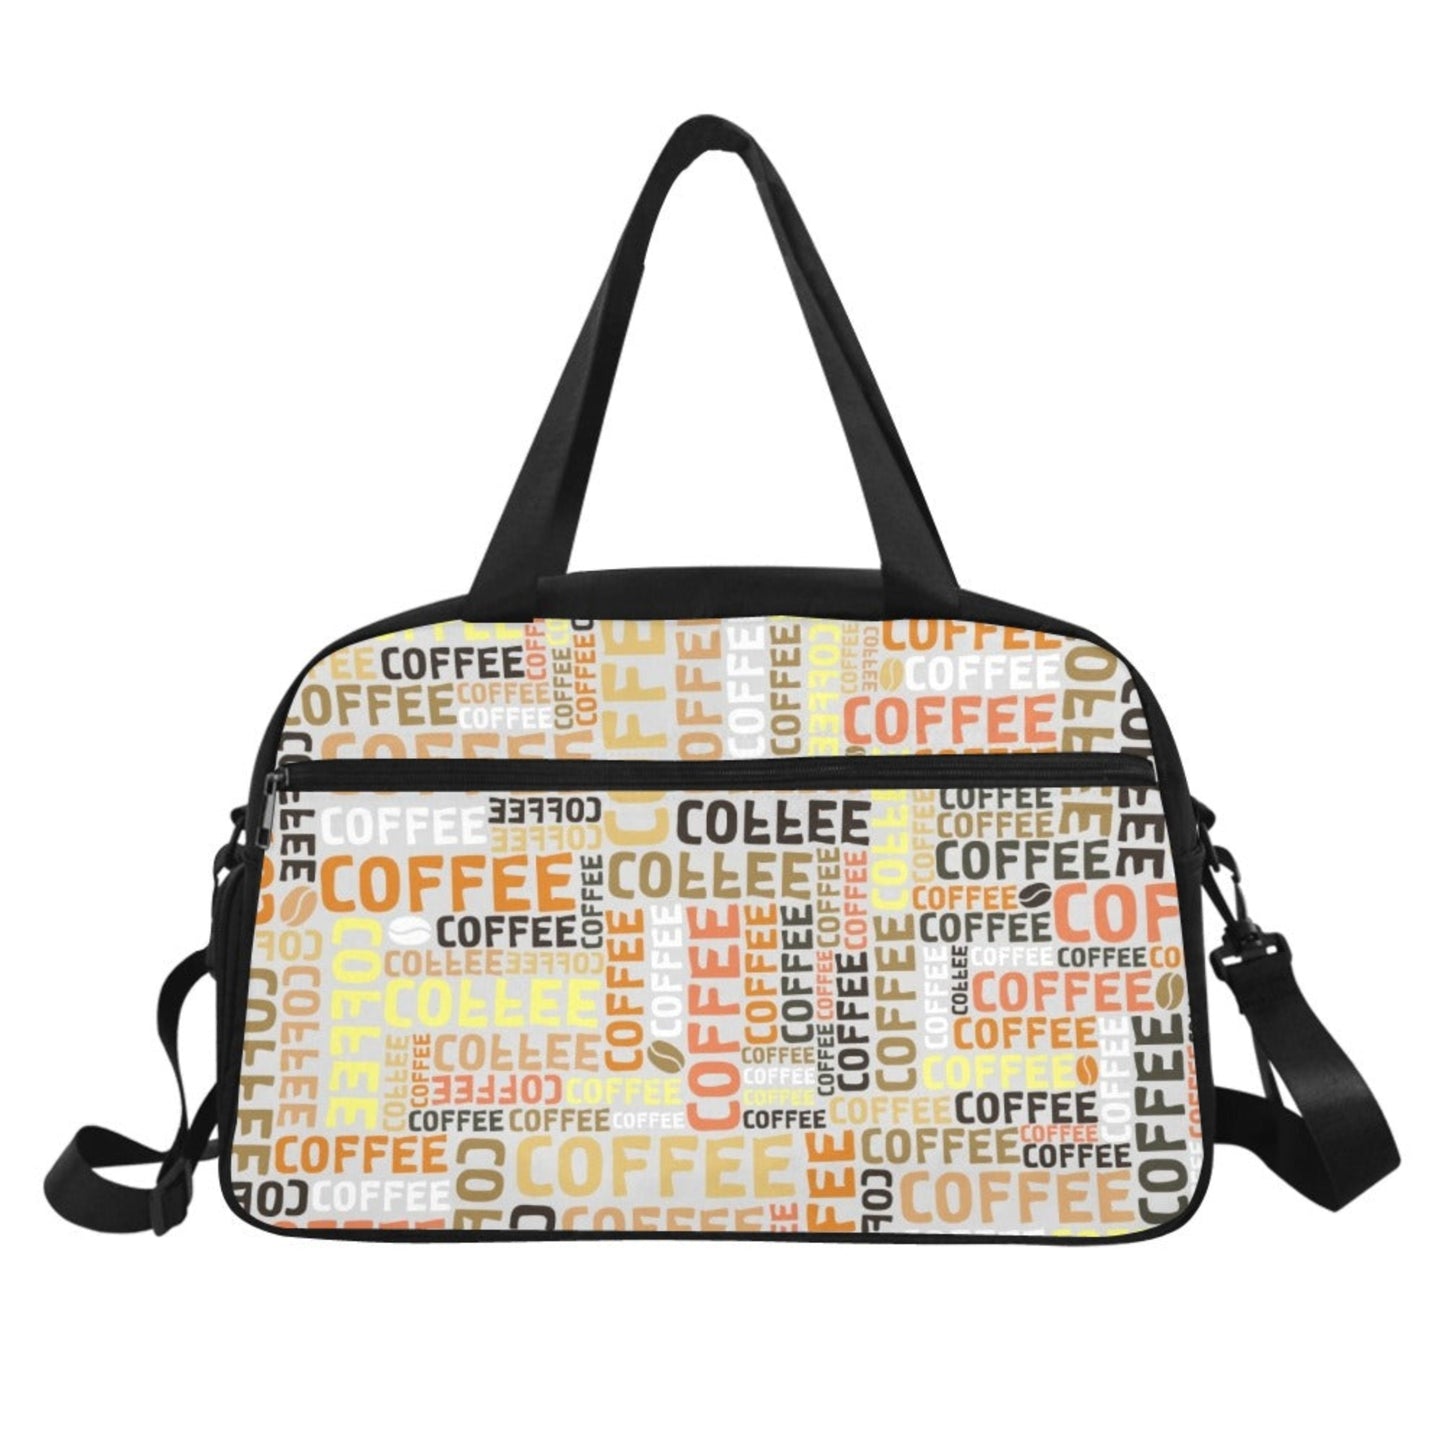 Coffee - Gym Bag Gym Bag